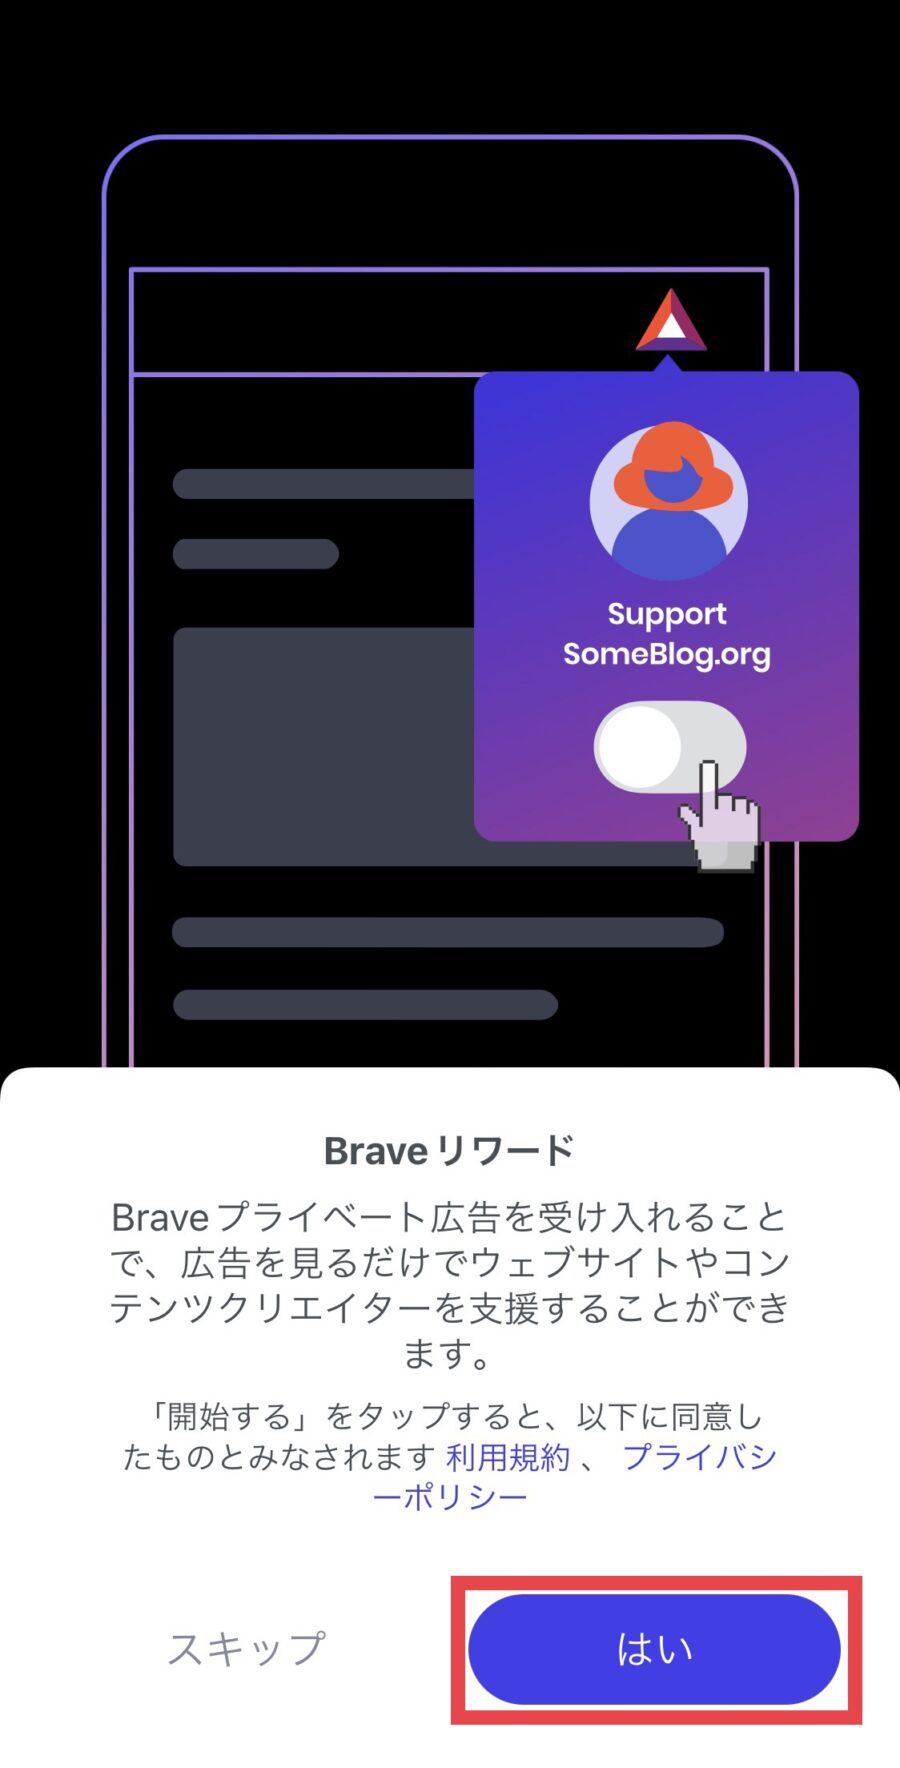 【iPhone版】Braveブラウザの設定・使い方